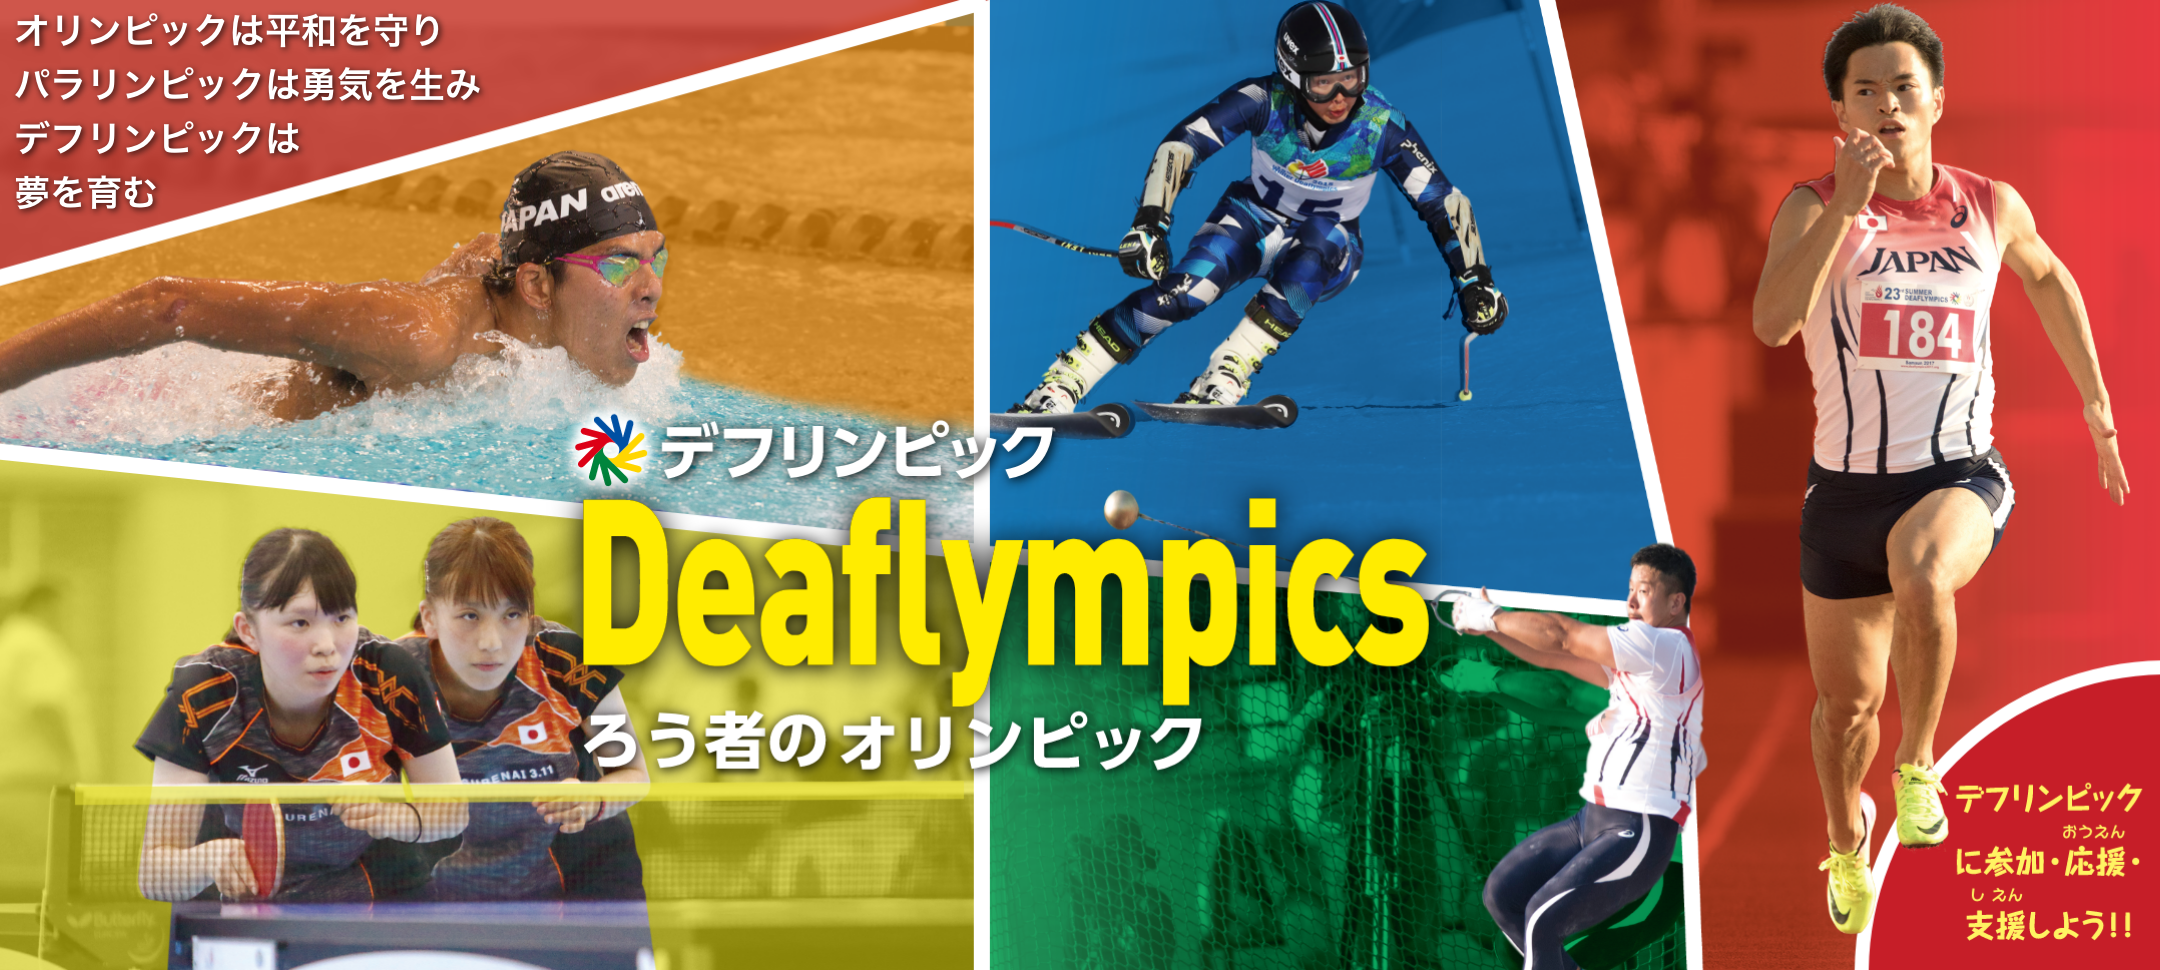 トップ画像、デフリンピック、ろうしゃのオリンピック、オリンピッ クは平和を守り、パラリンピックは勇気を生み、デフリンピックは夢を 育む